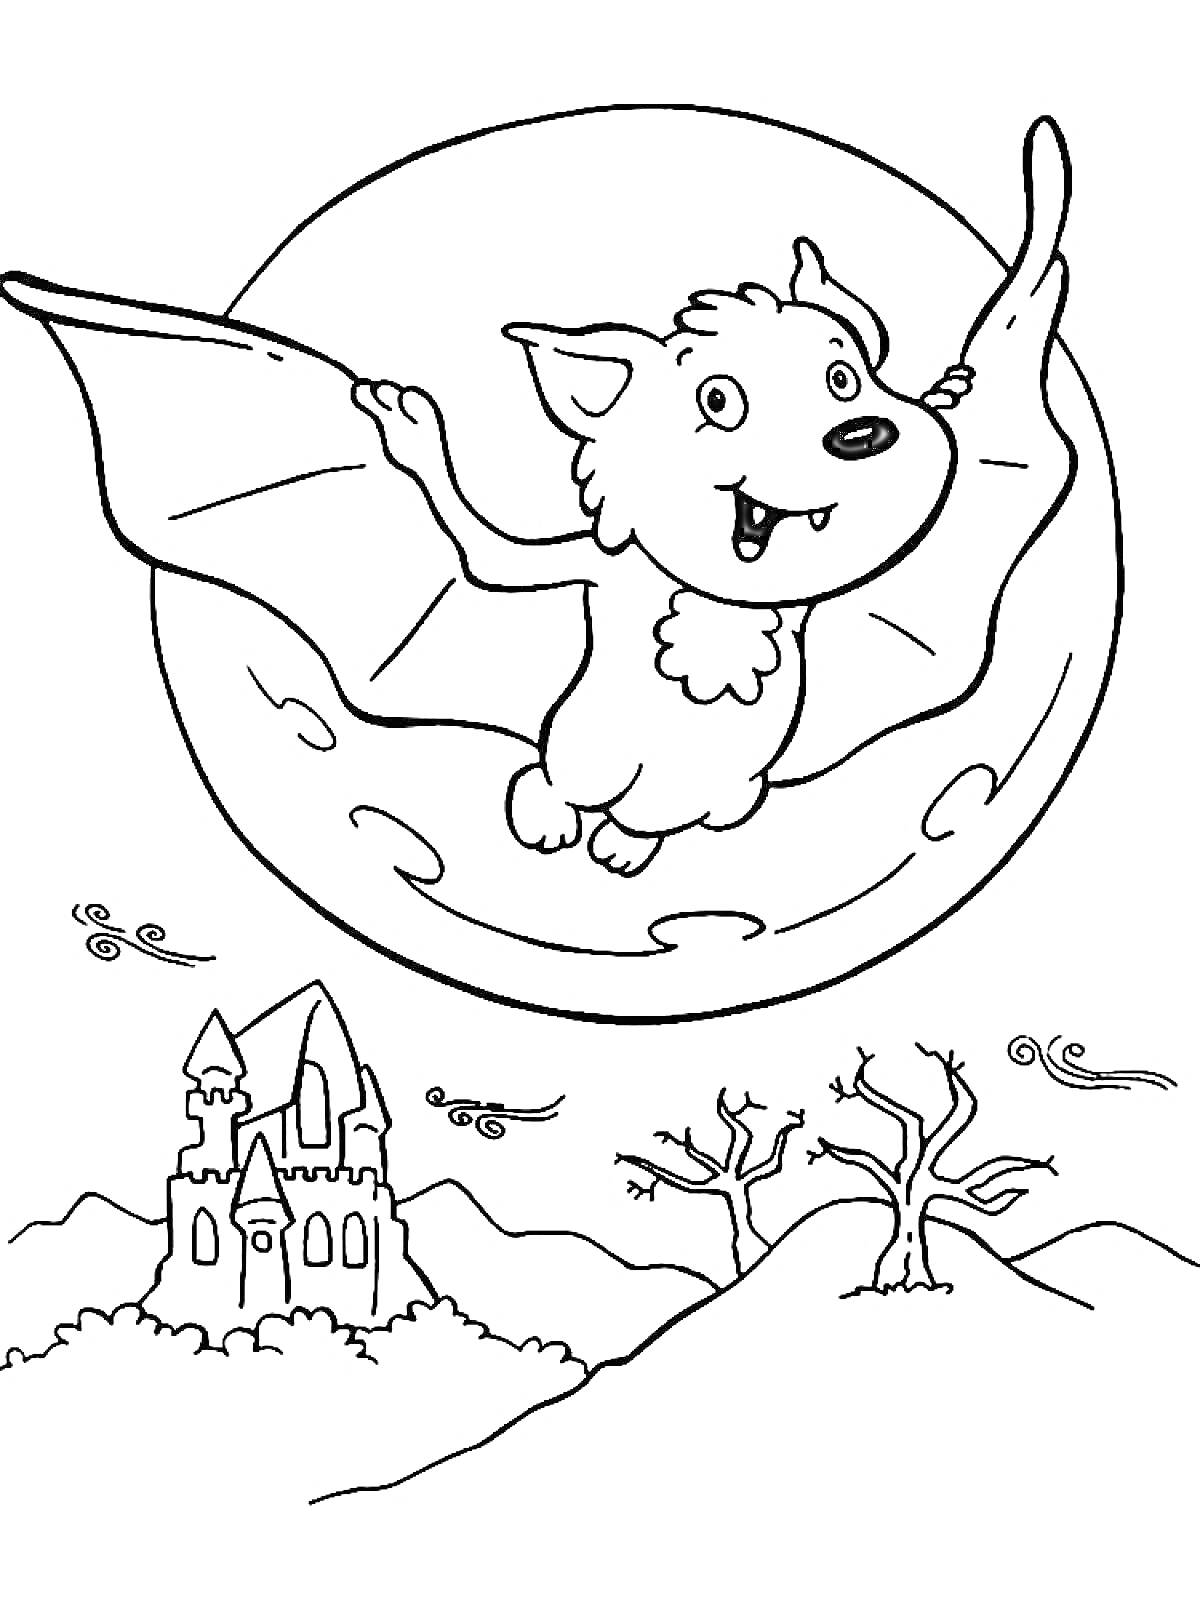 Раскраска Летучая мышь вампир на фоне полной луны и привидений с замком и деревьями на земле